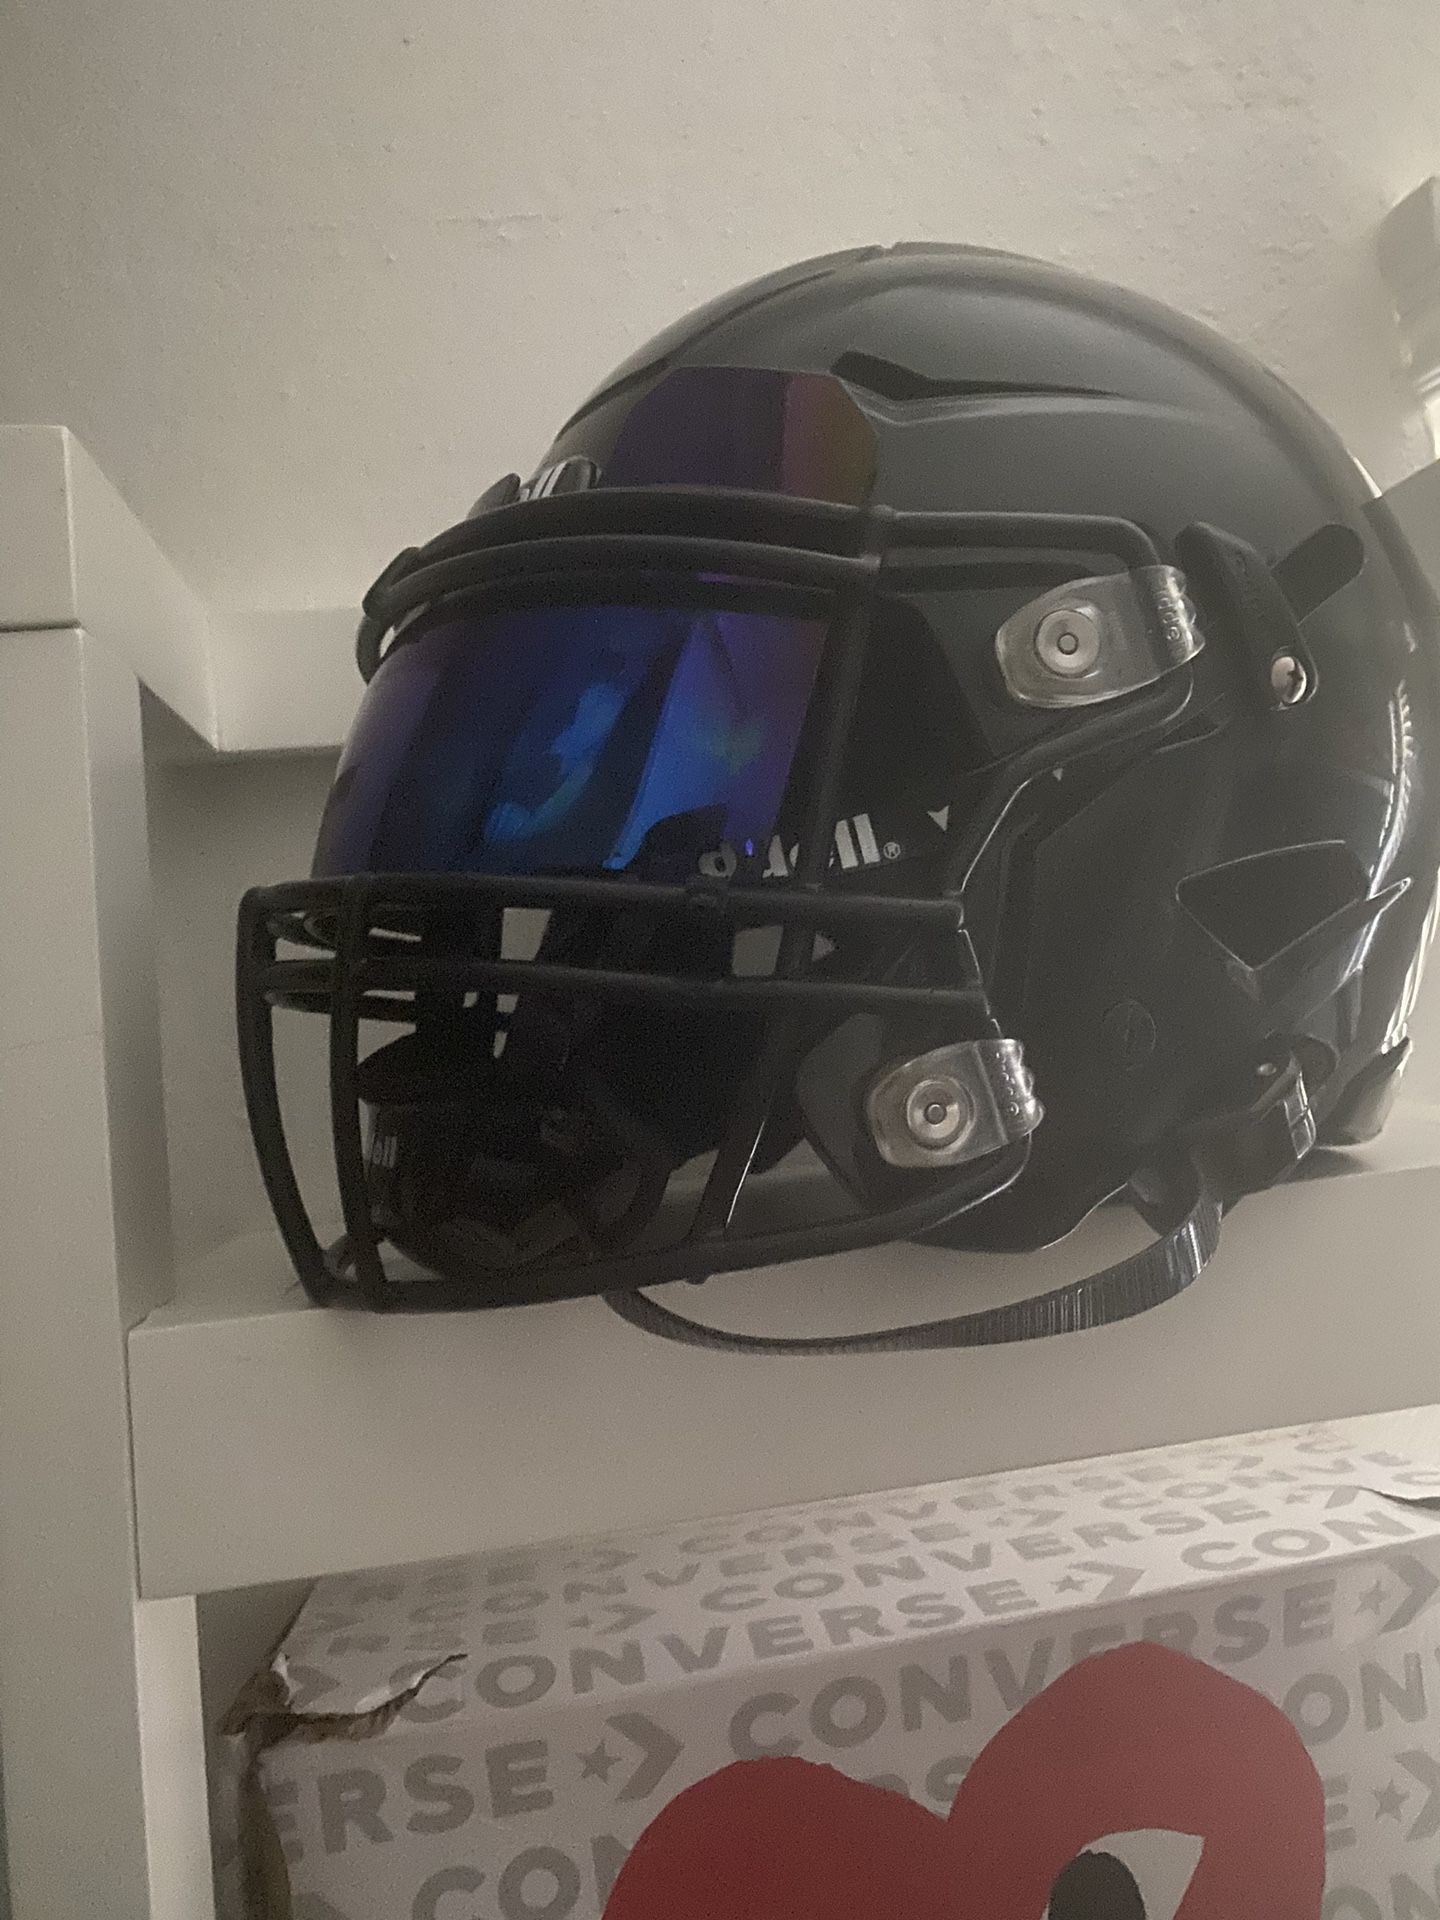 Riddell Speedflex Football Helmet 